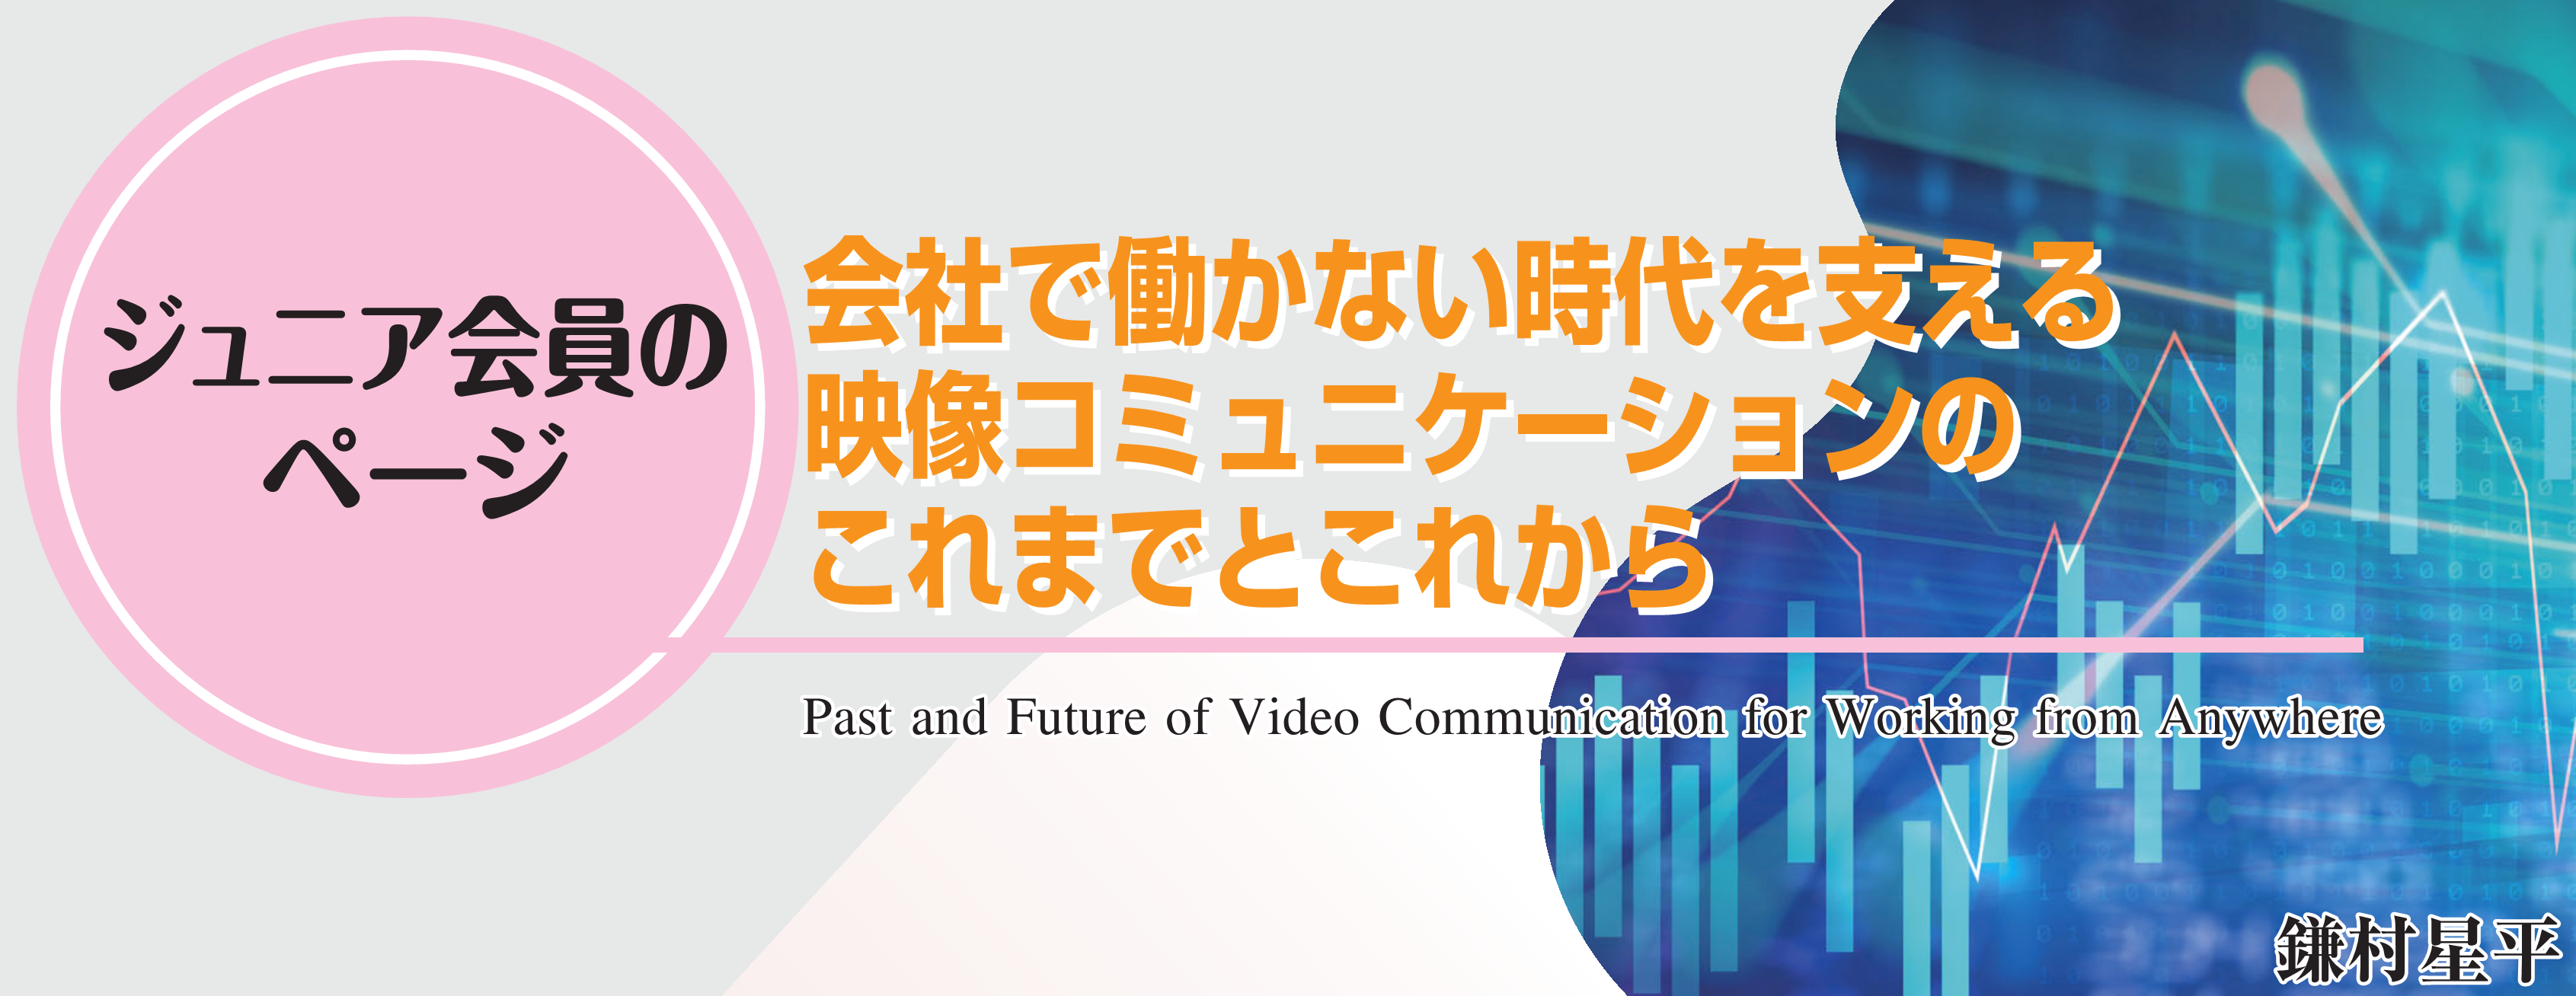 ジュニア会員のページ　会社で働かない時代を支える映像コミュニケーションのこれまでとこれから　Past and Future of Video Communication for Working from Anywhere　鎌村星平